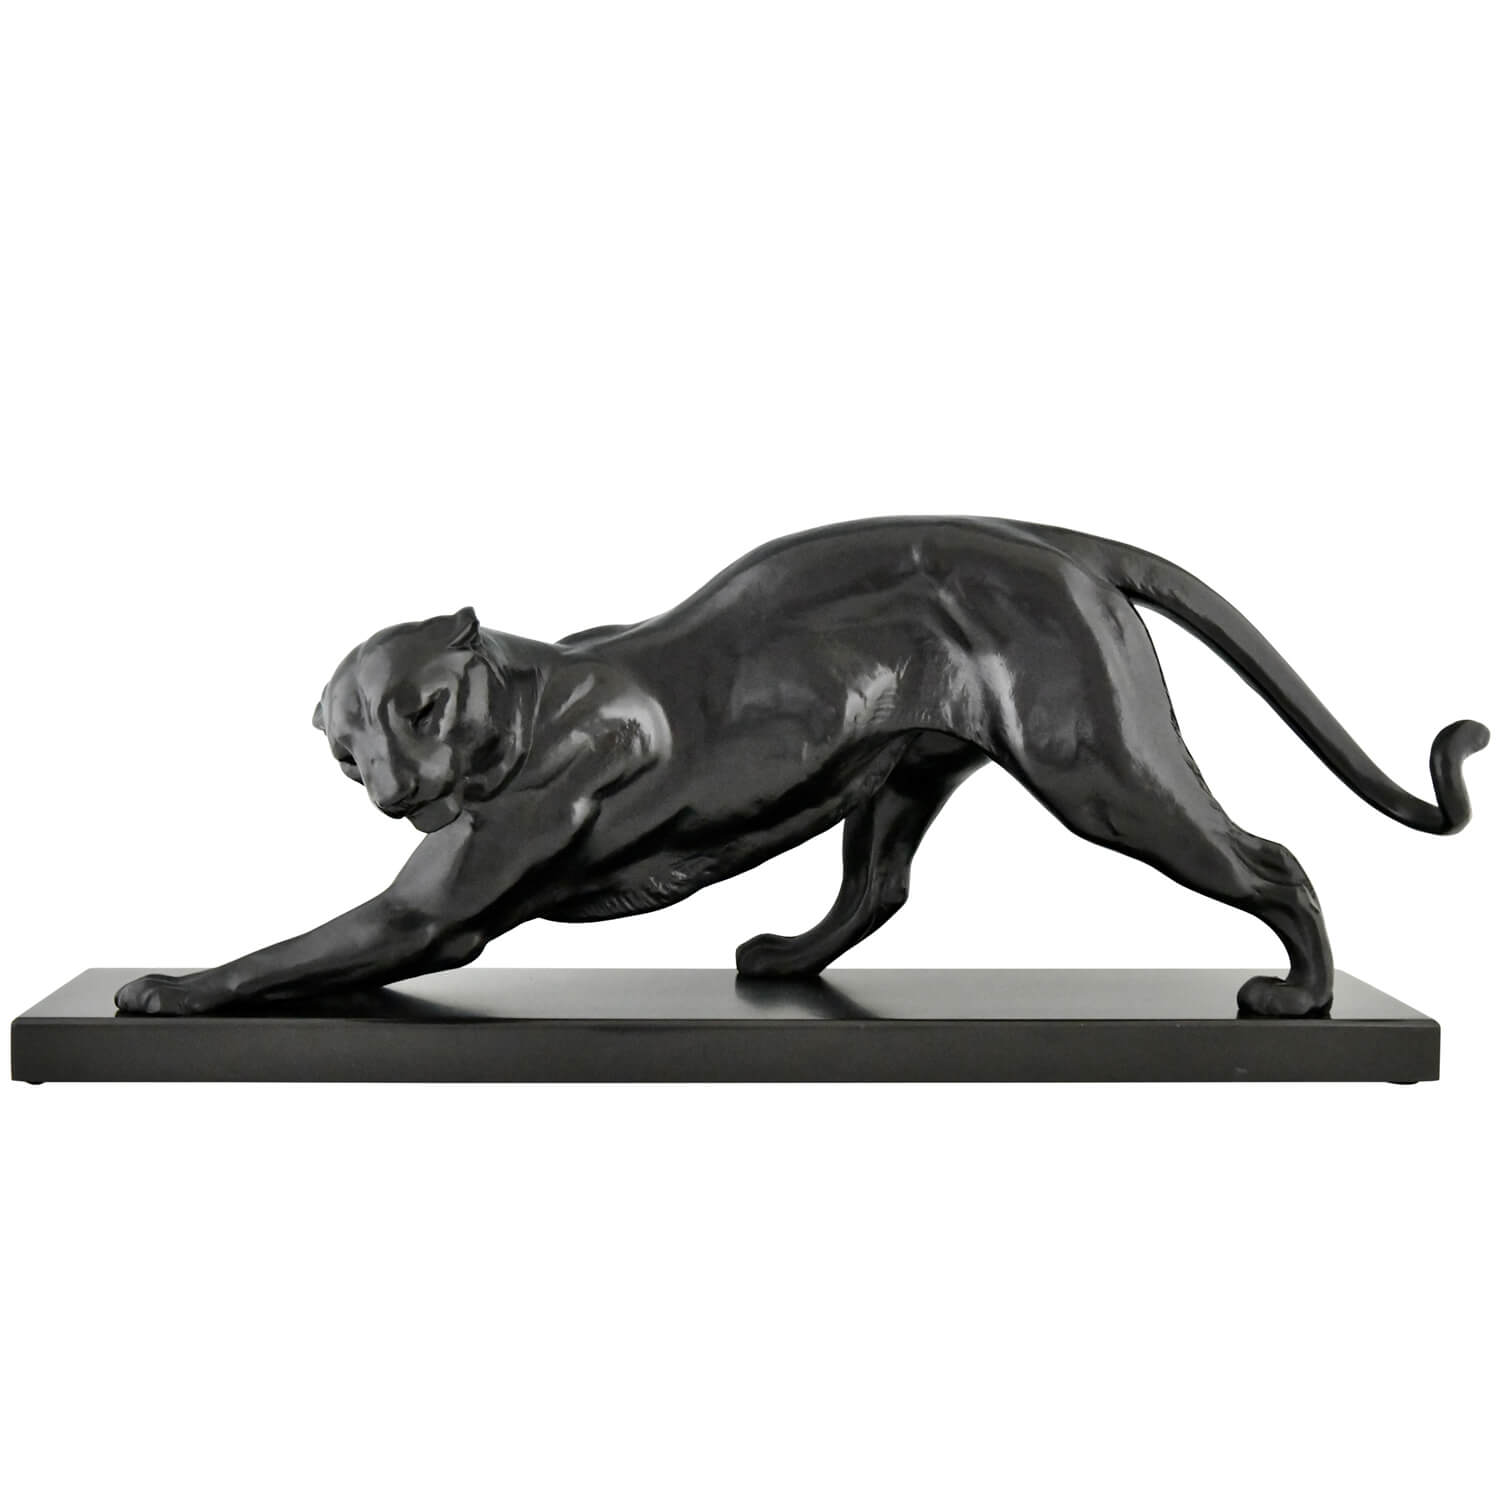 Plagnet panther sculpture Art Deco - 1